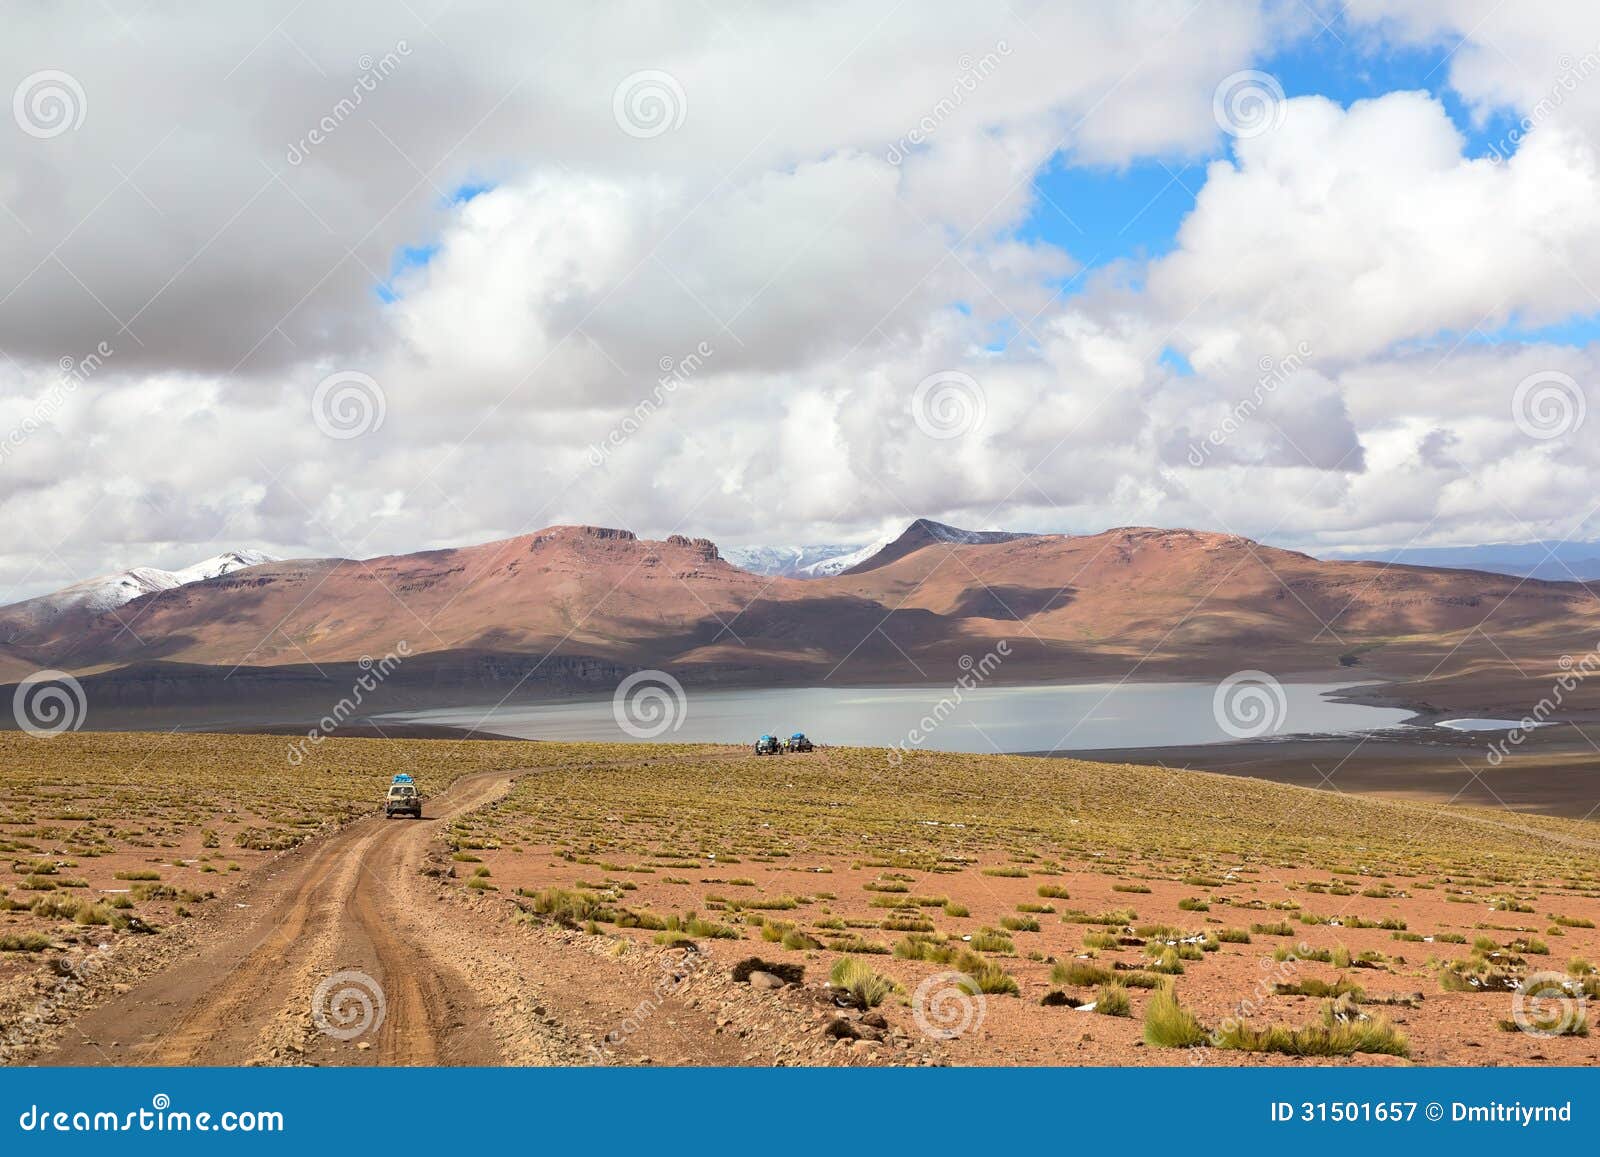 lagoon morejon in altiplano of the andes, bolivia